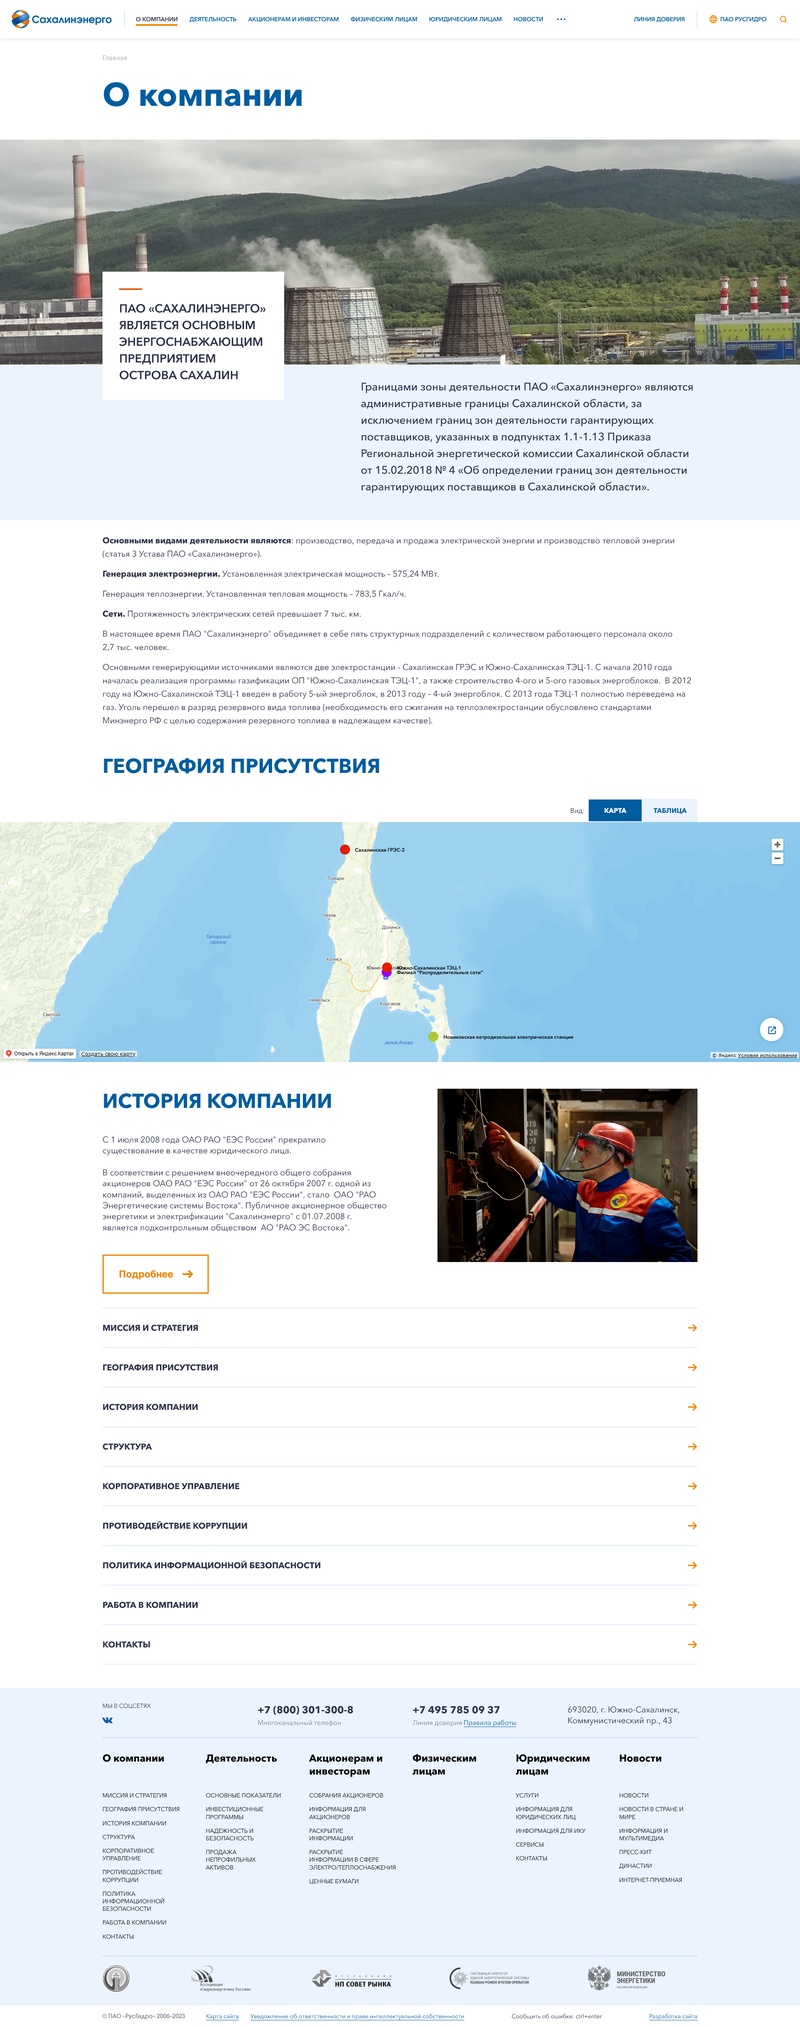 разработка официального сайта пао «сахалинэнерго»